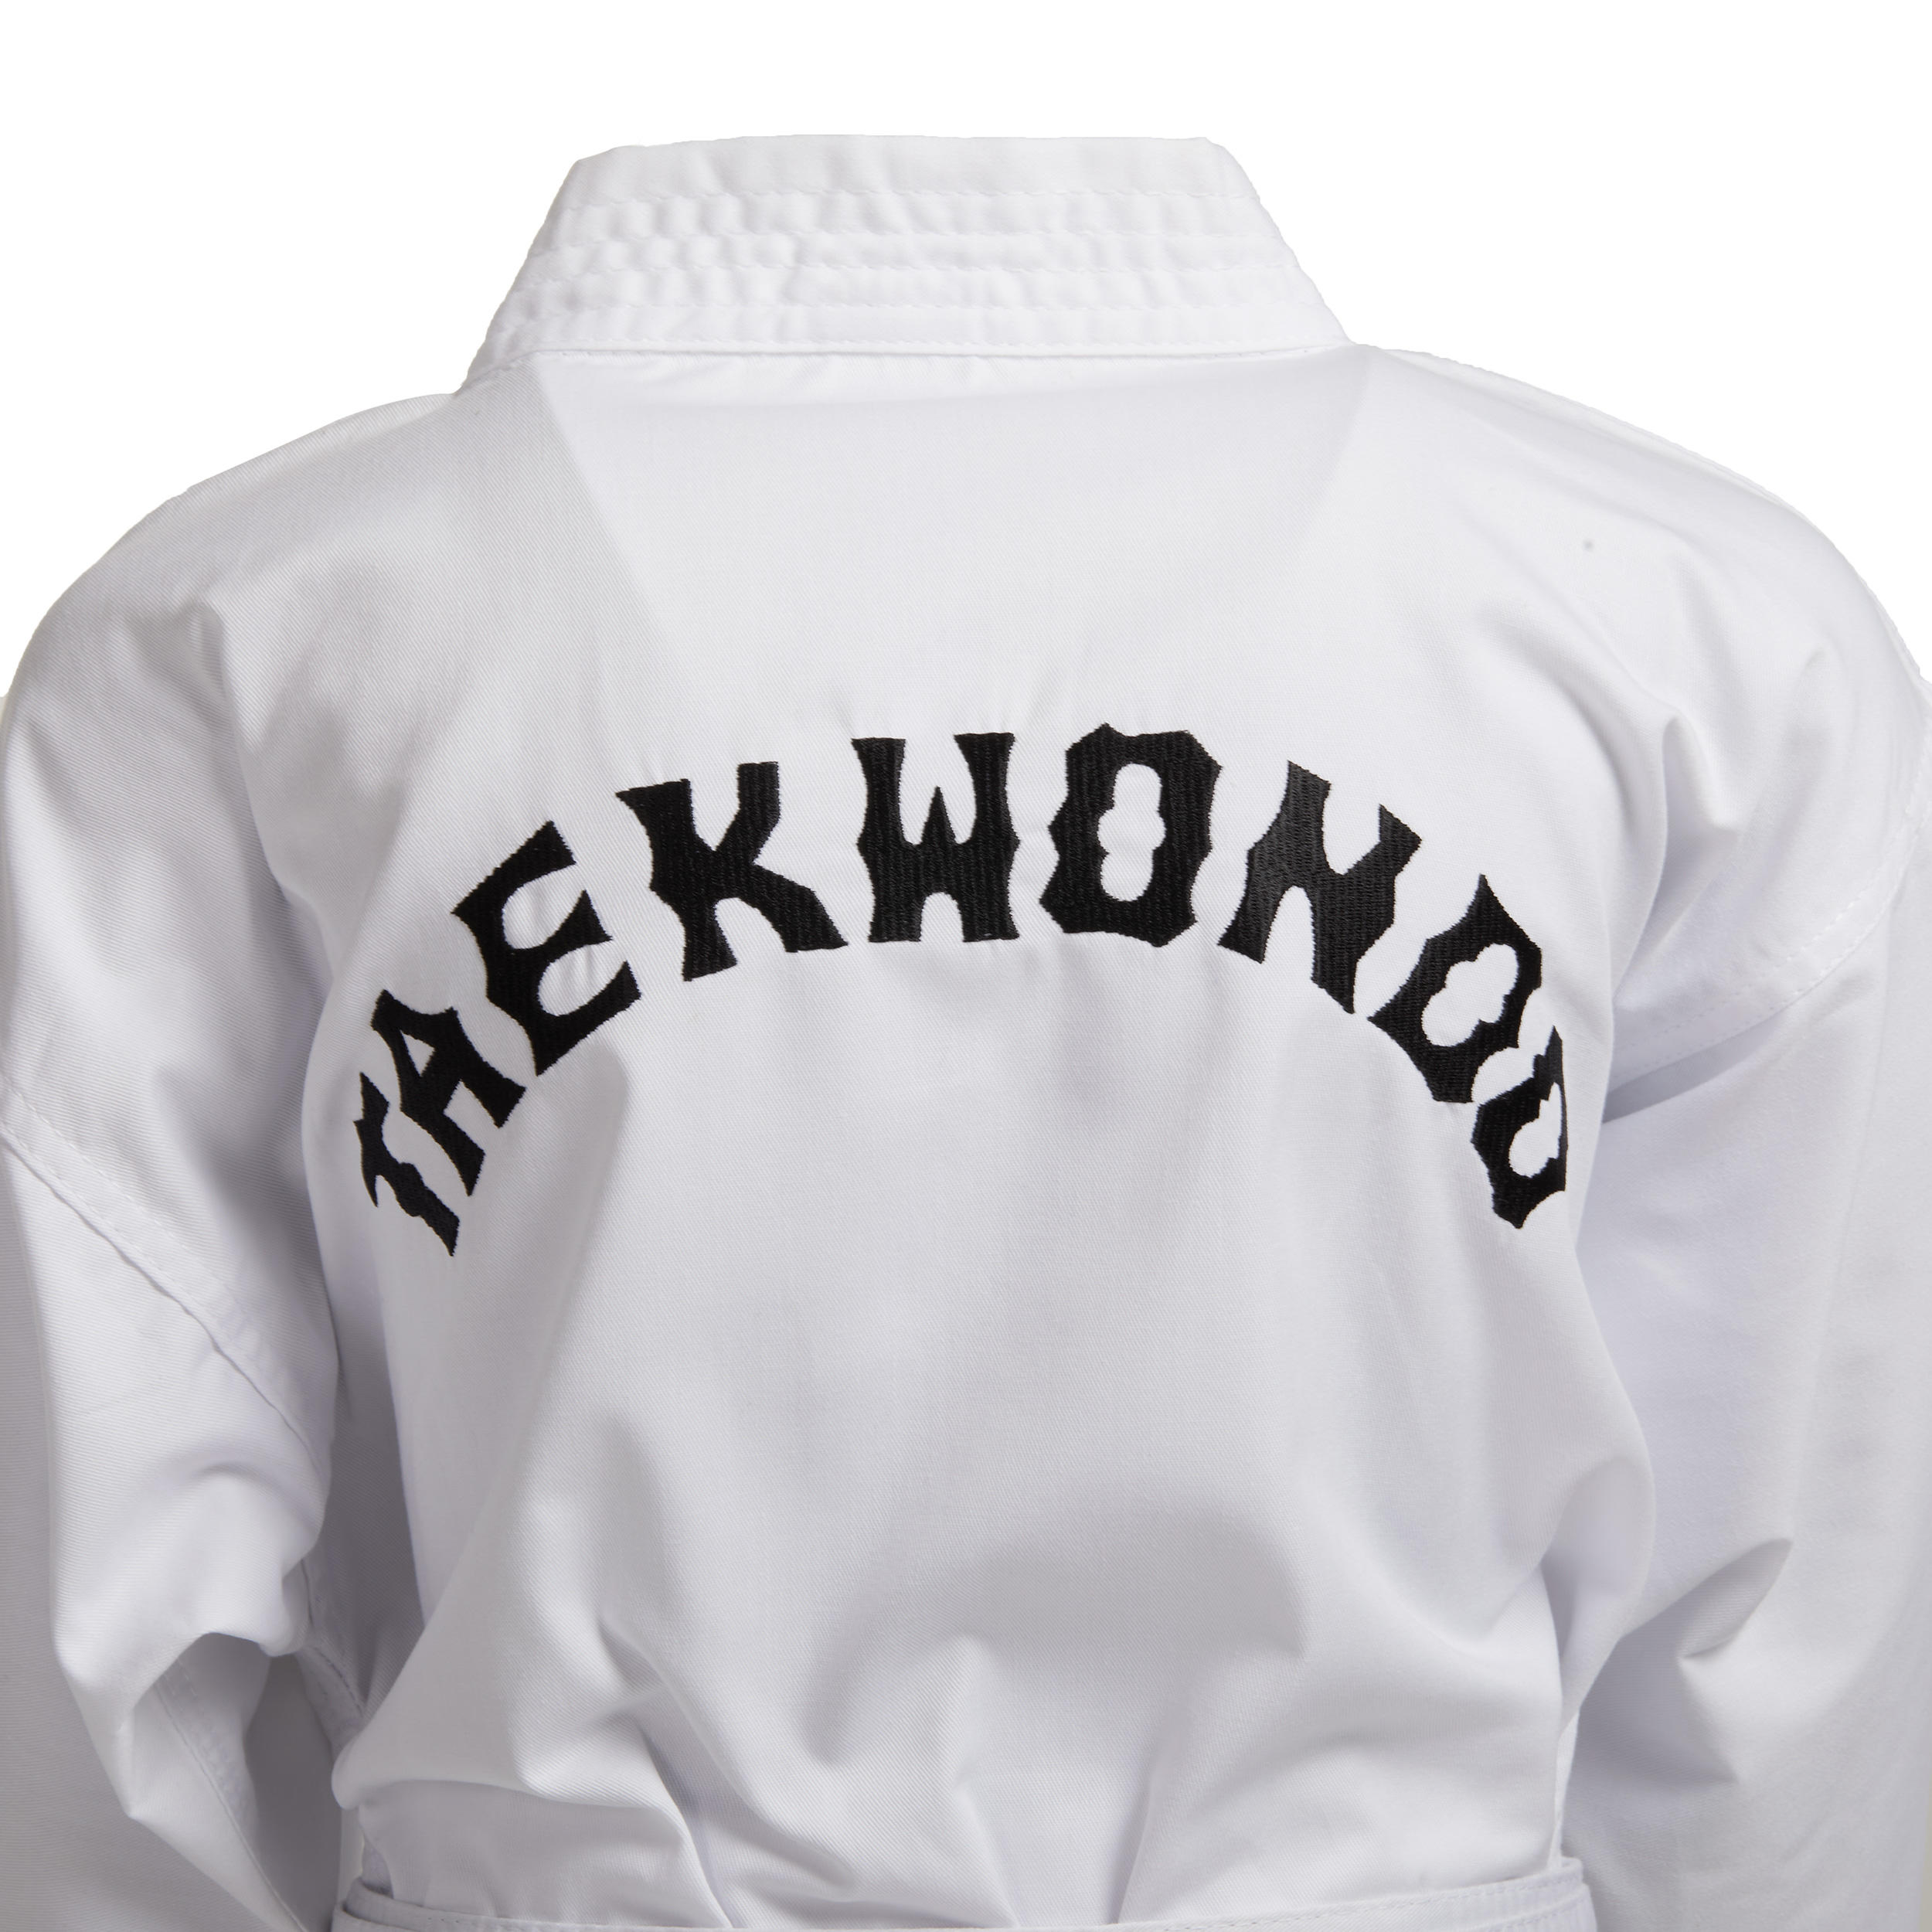 100 Kids' Taekwondo Dobok Uniform - White 5/7